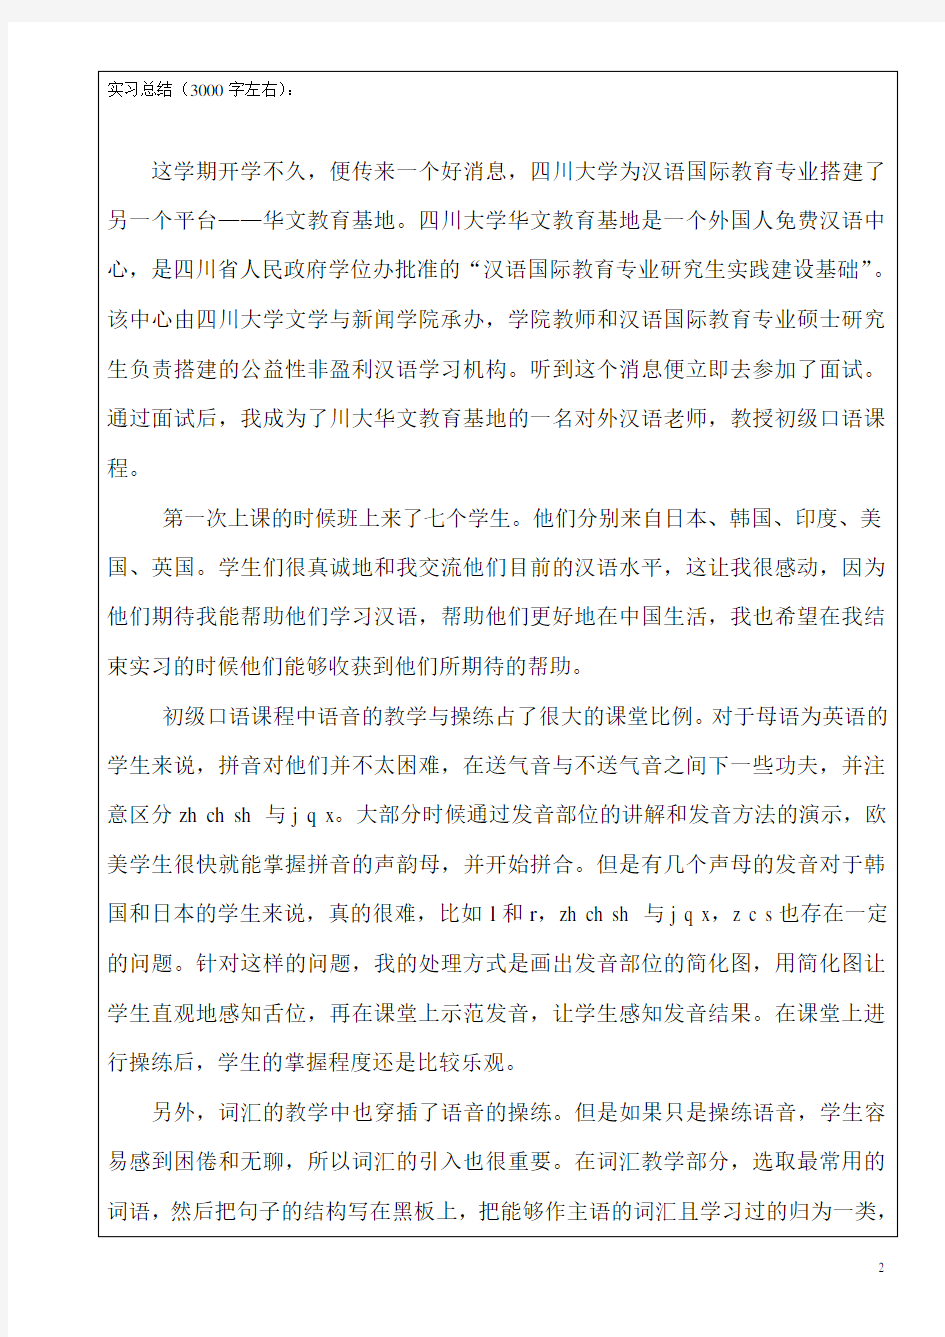 2四川大学汉语国际教育专业硕士实习工作总结